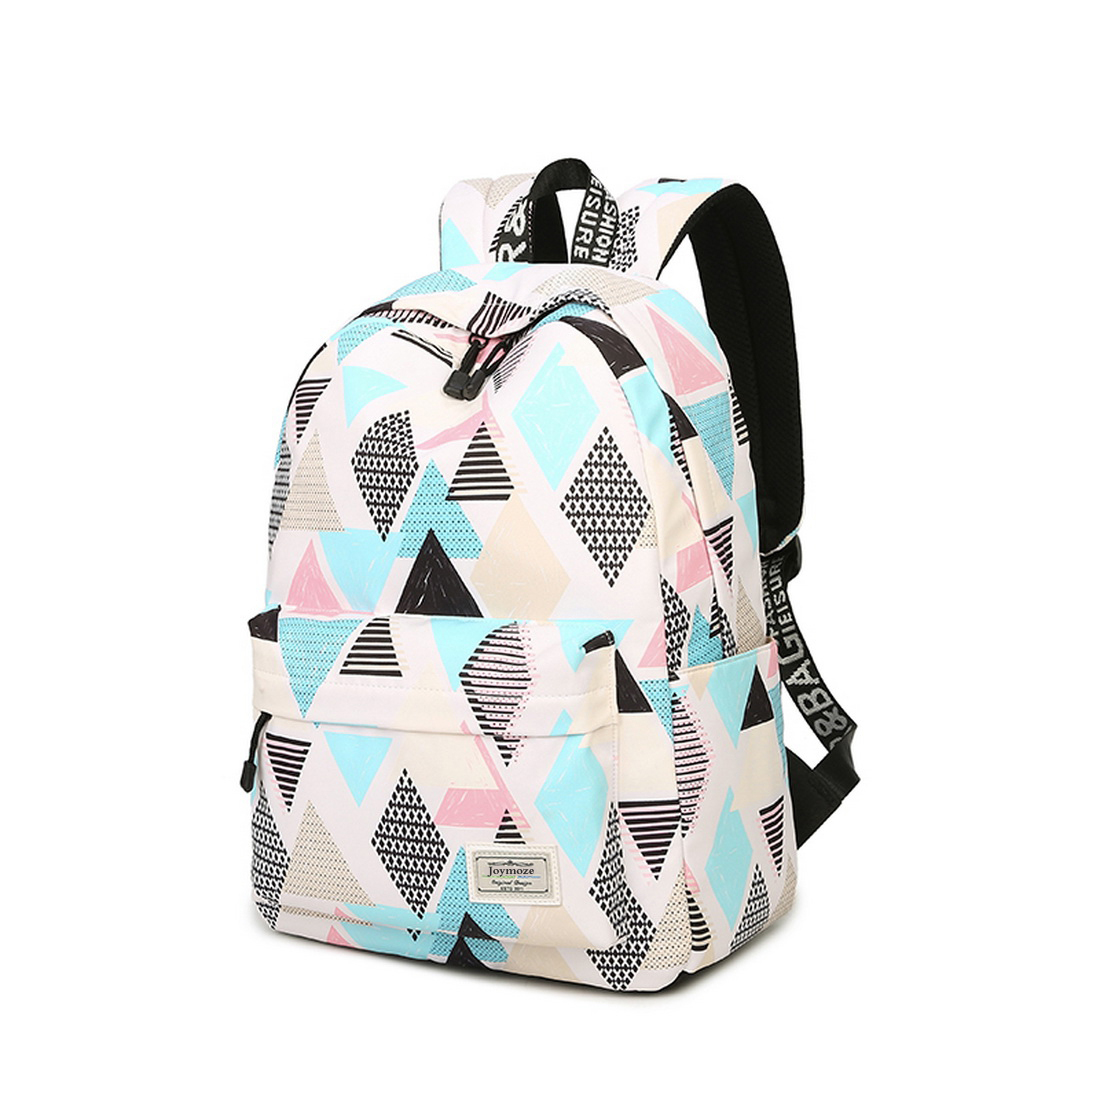 School Backpack Joymoze Waterproof School Backpack For Girls Middle School Cute Bookbag Daypack For Women Rhombus 843